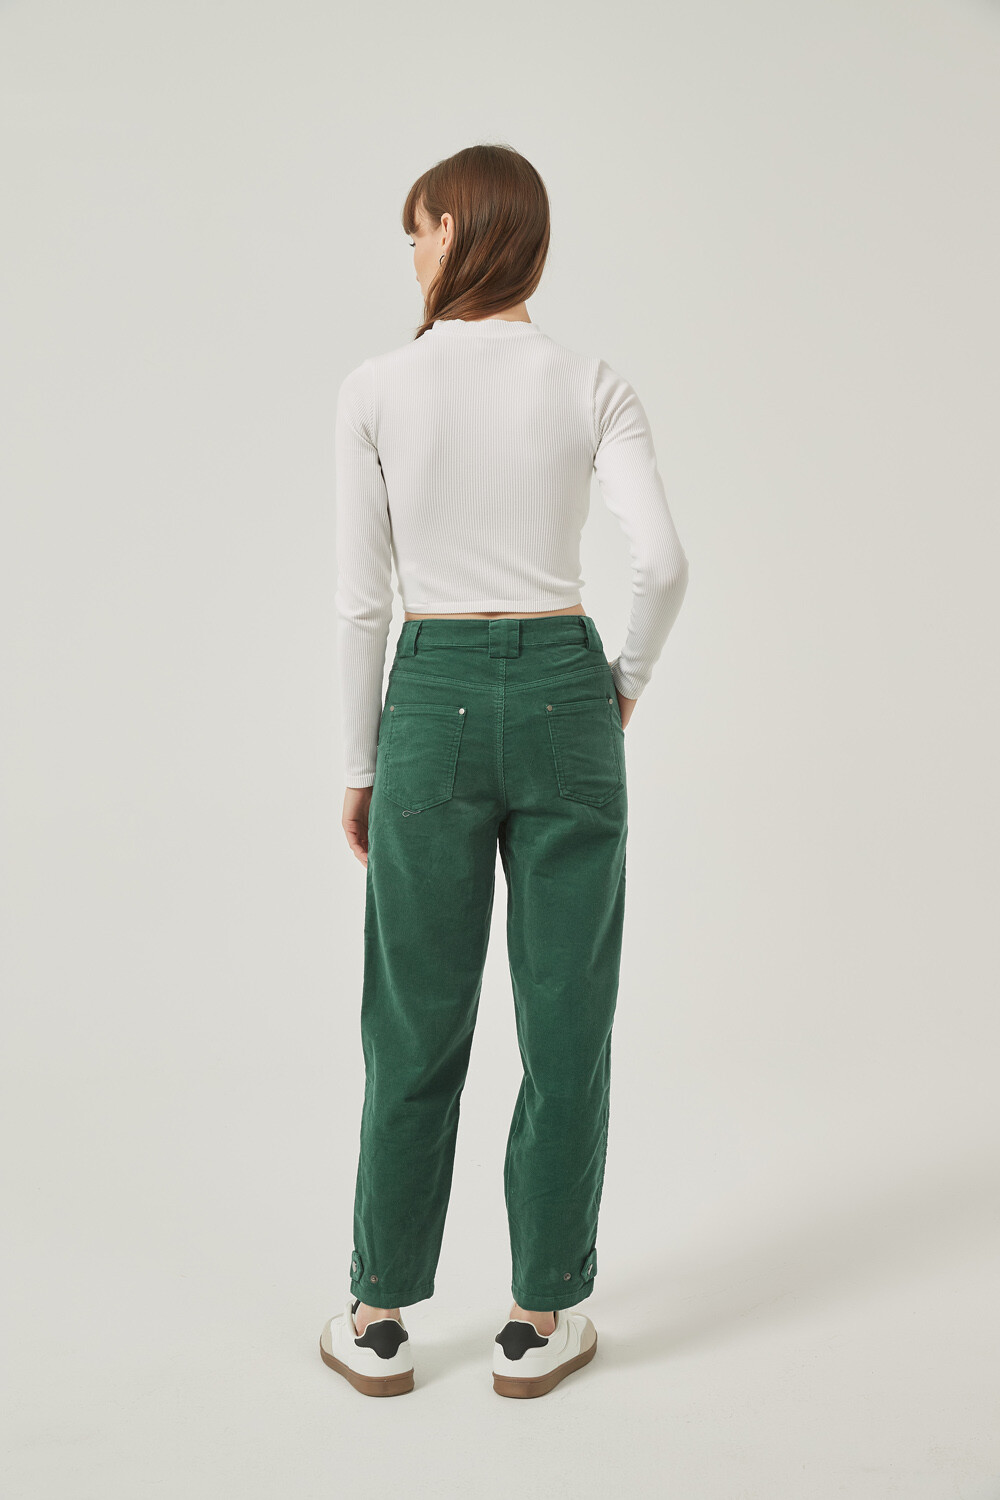 Pantalon Espar Verde Azulado